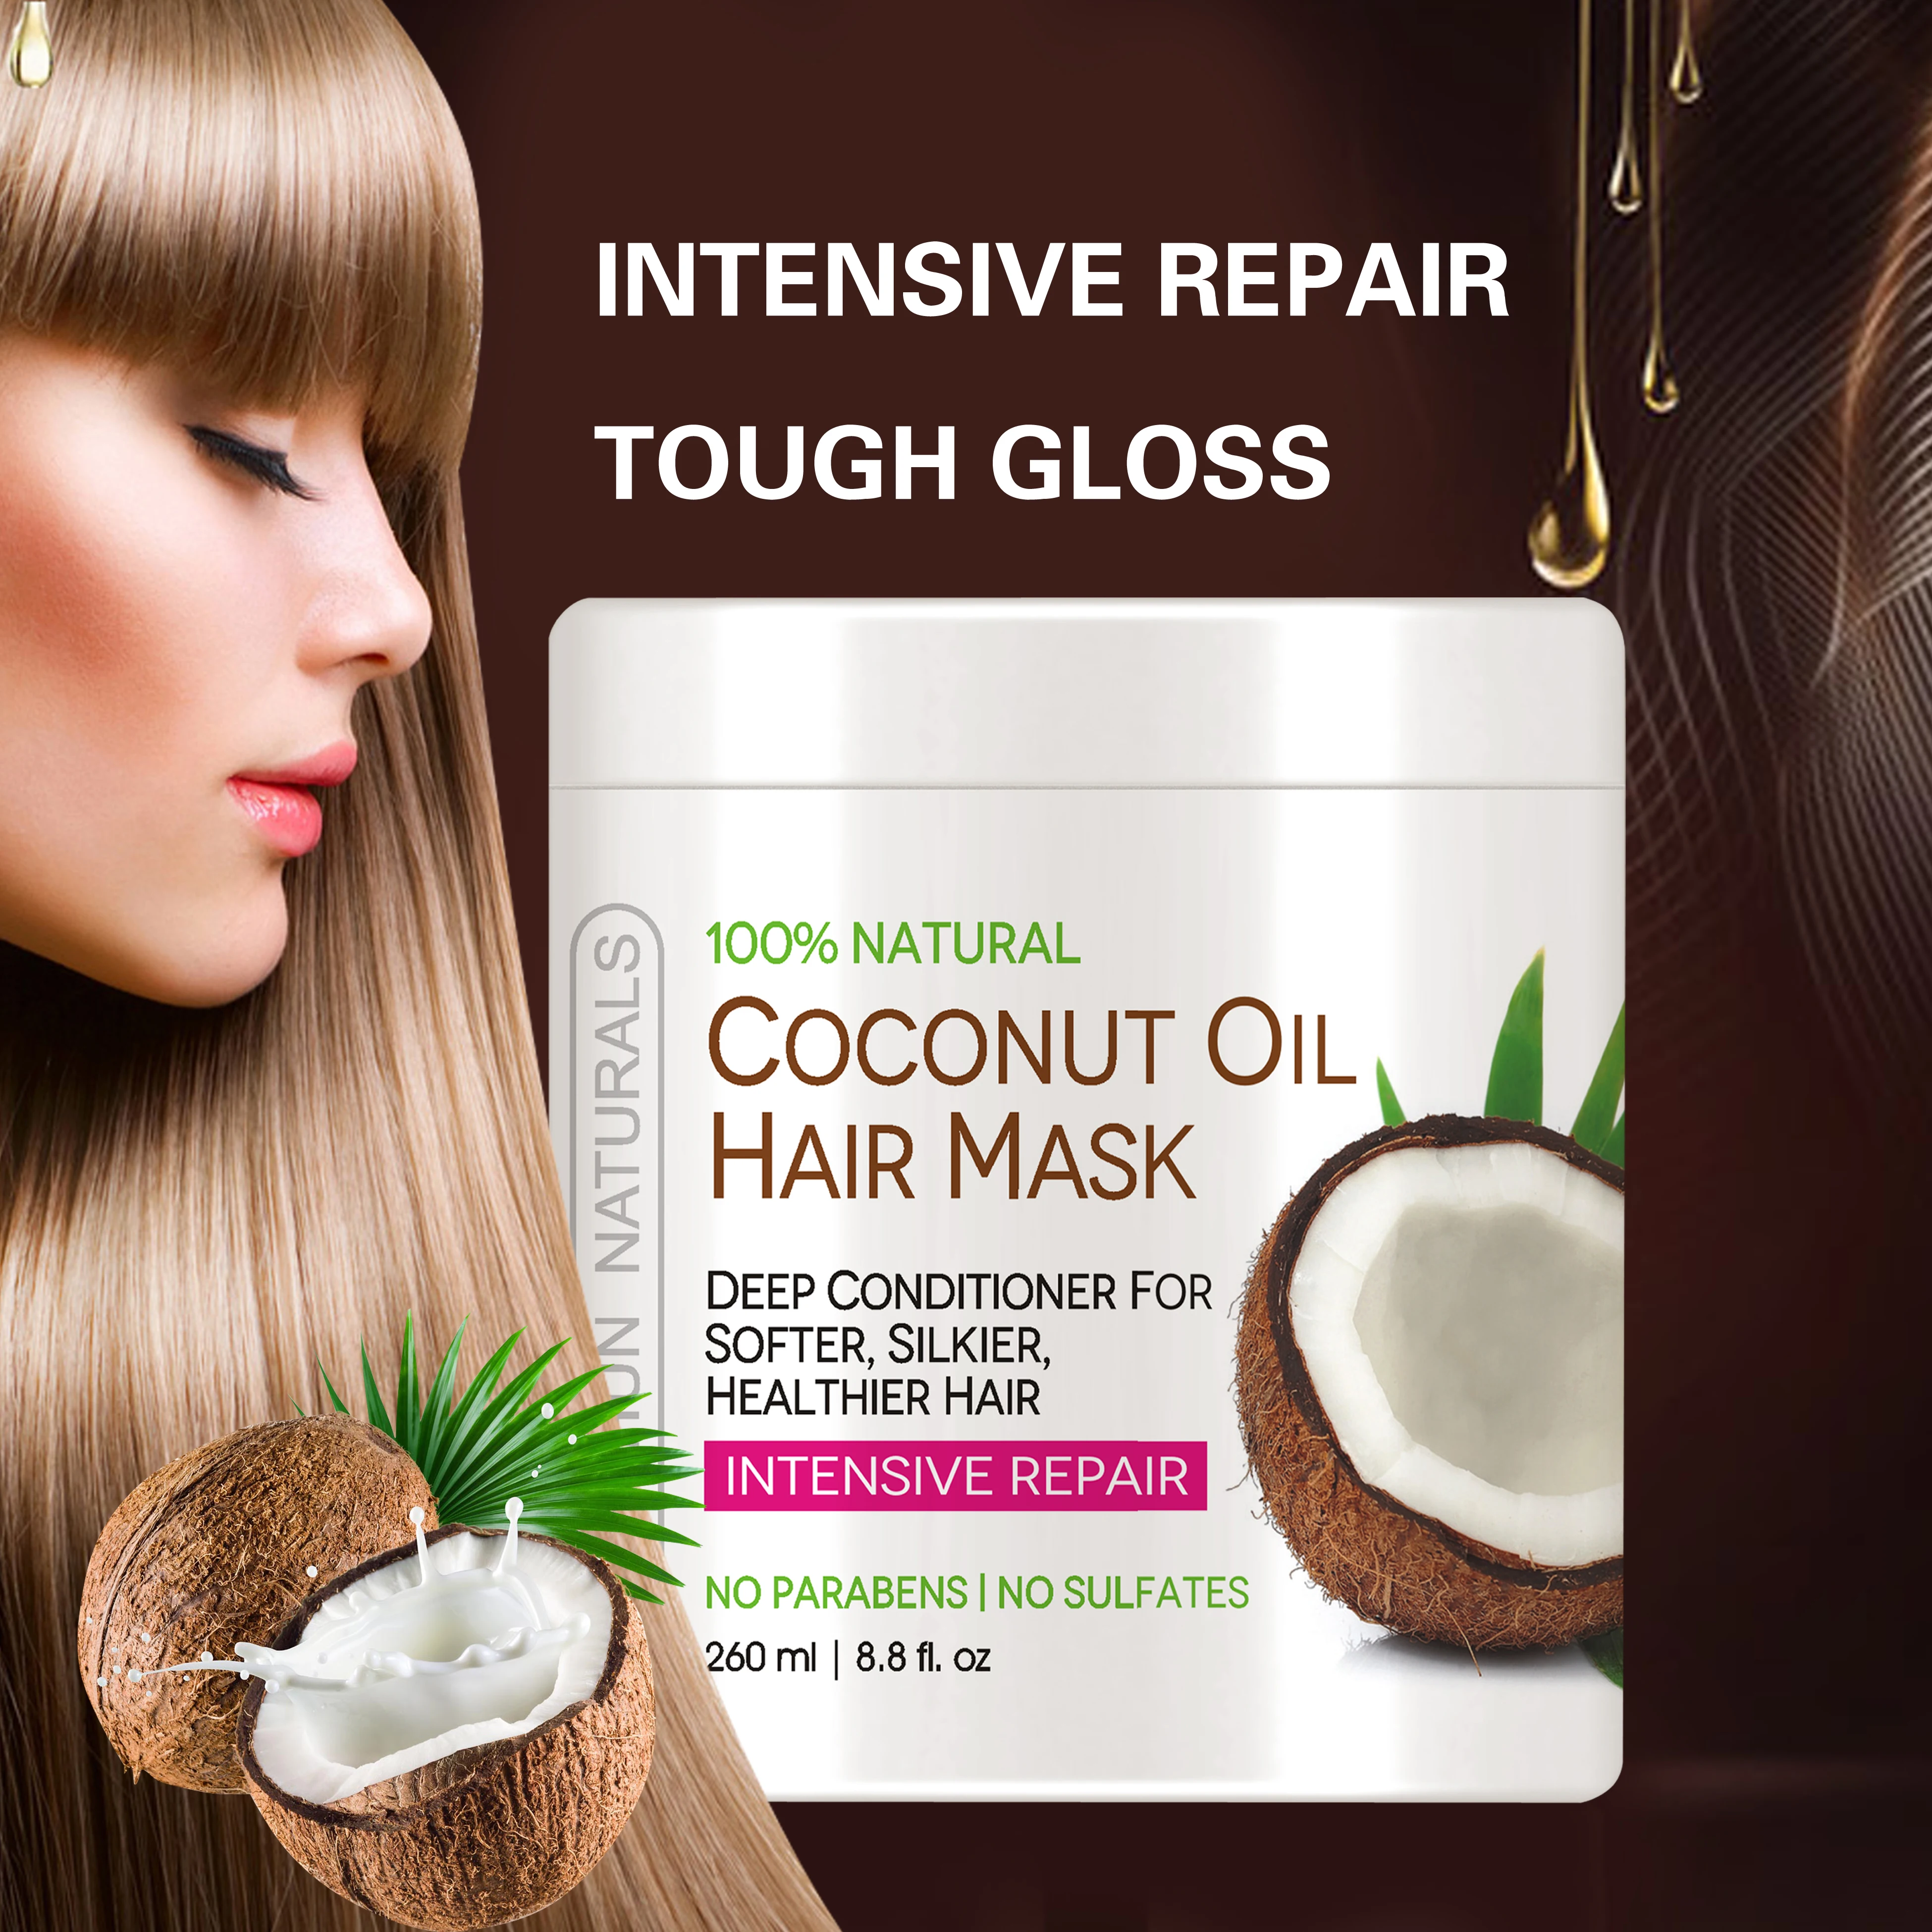 Coconut Oil Hair Treatment